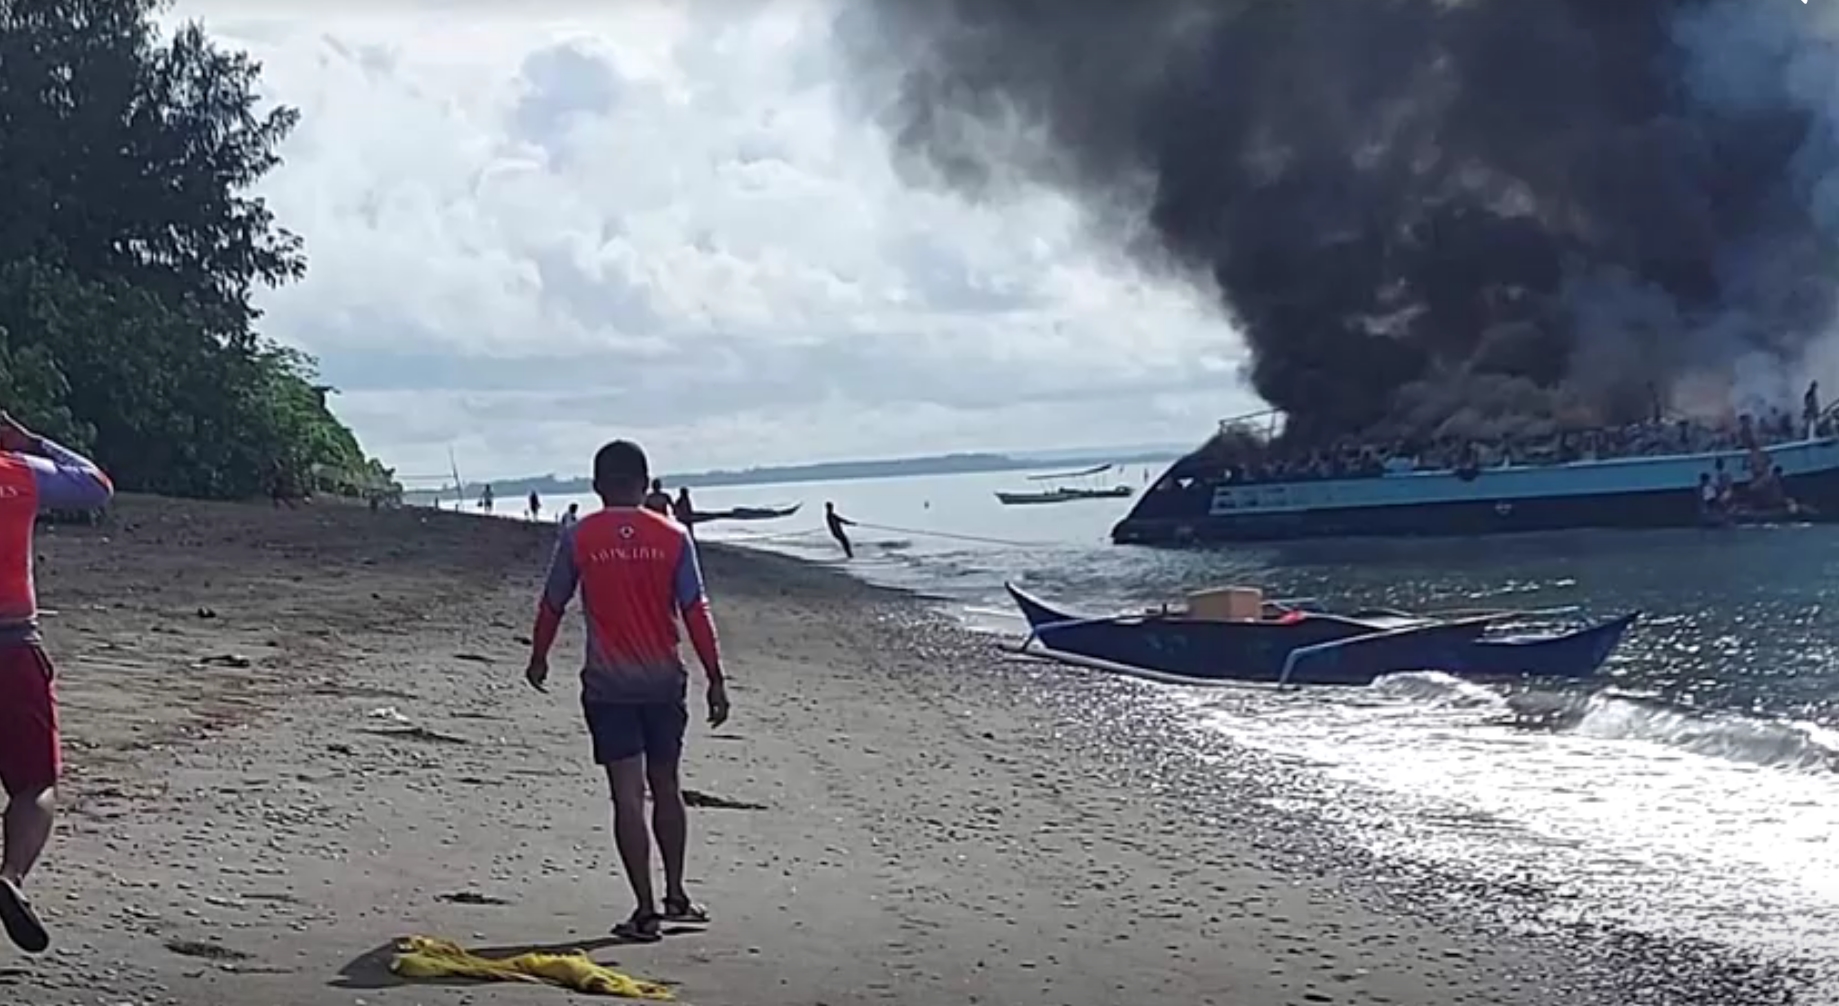 菲律宾一船只起火 造成1人死亡